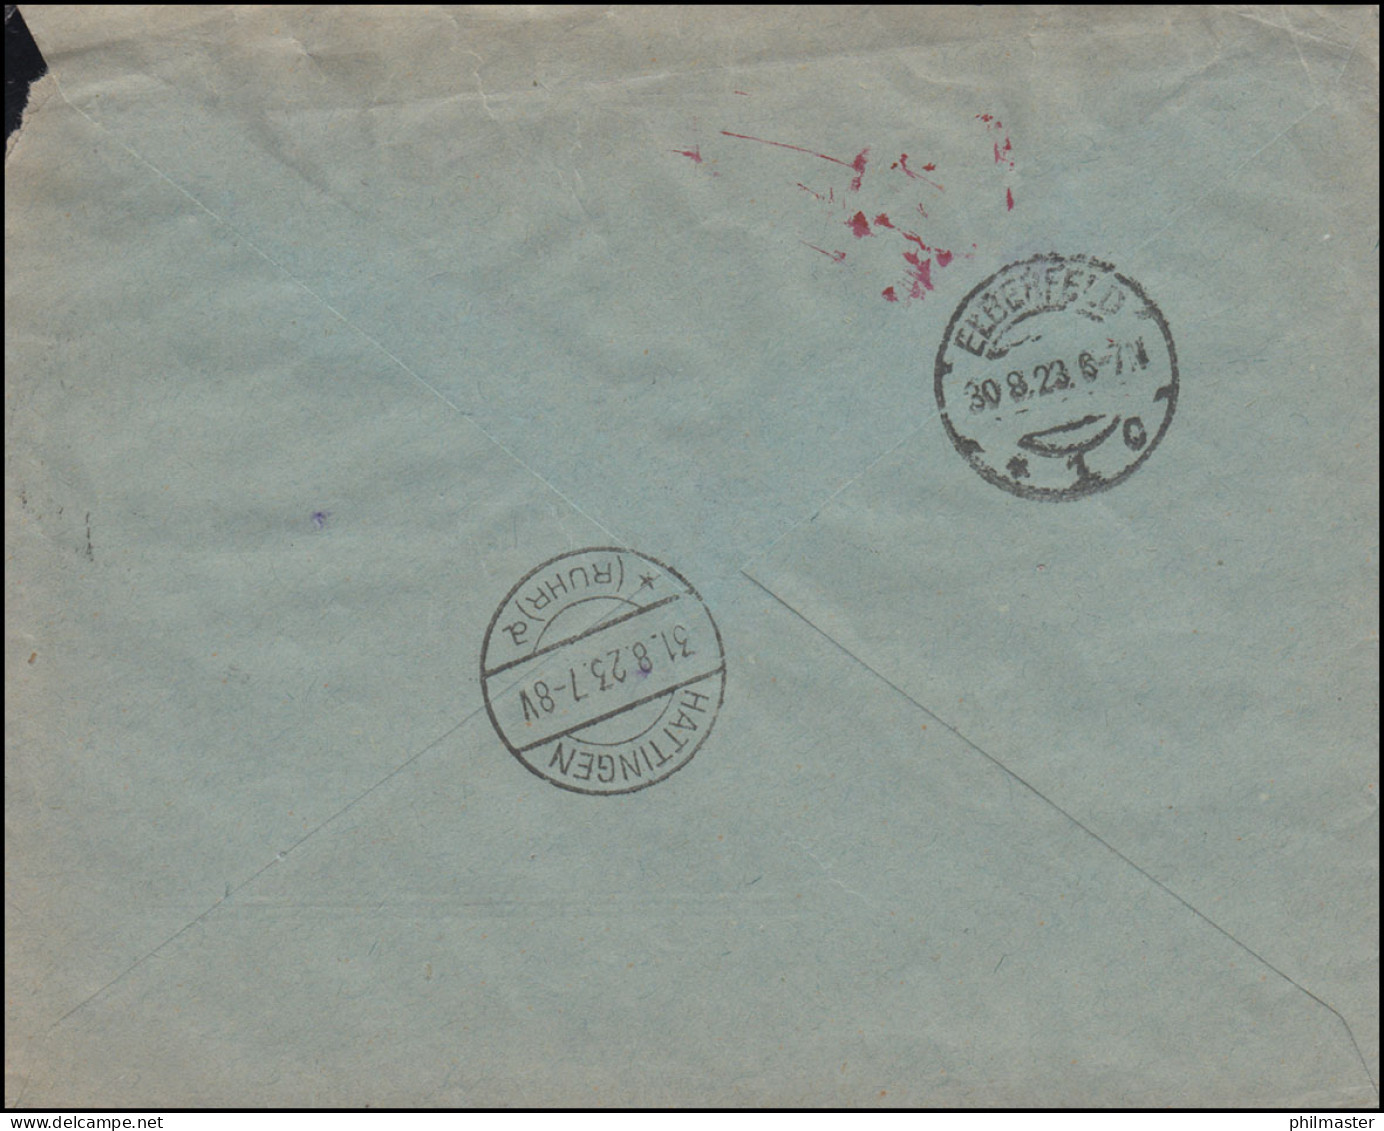 Gebühr-Bezahlt-Stempel Auf R-Brief HAGEN / WESTF. 30.8.1923 Nach HATTINGEN 31.8. - Brieven En Documenten